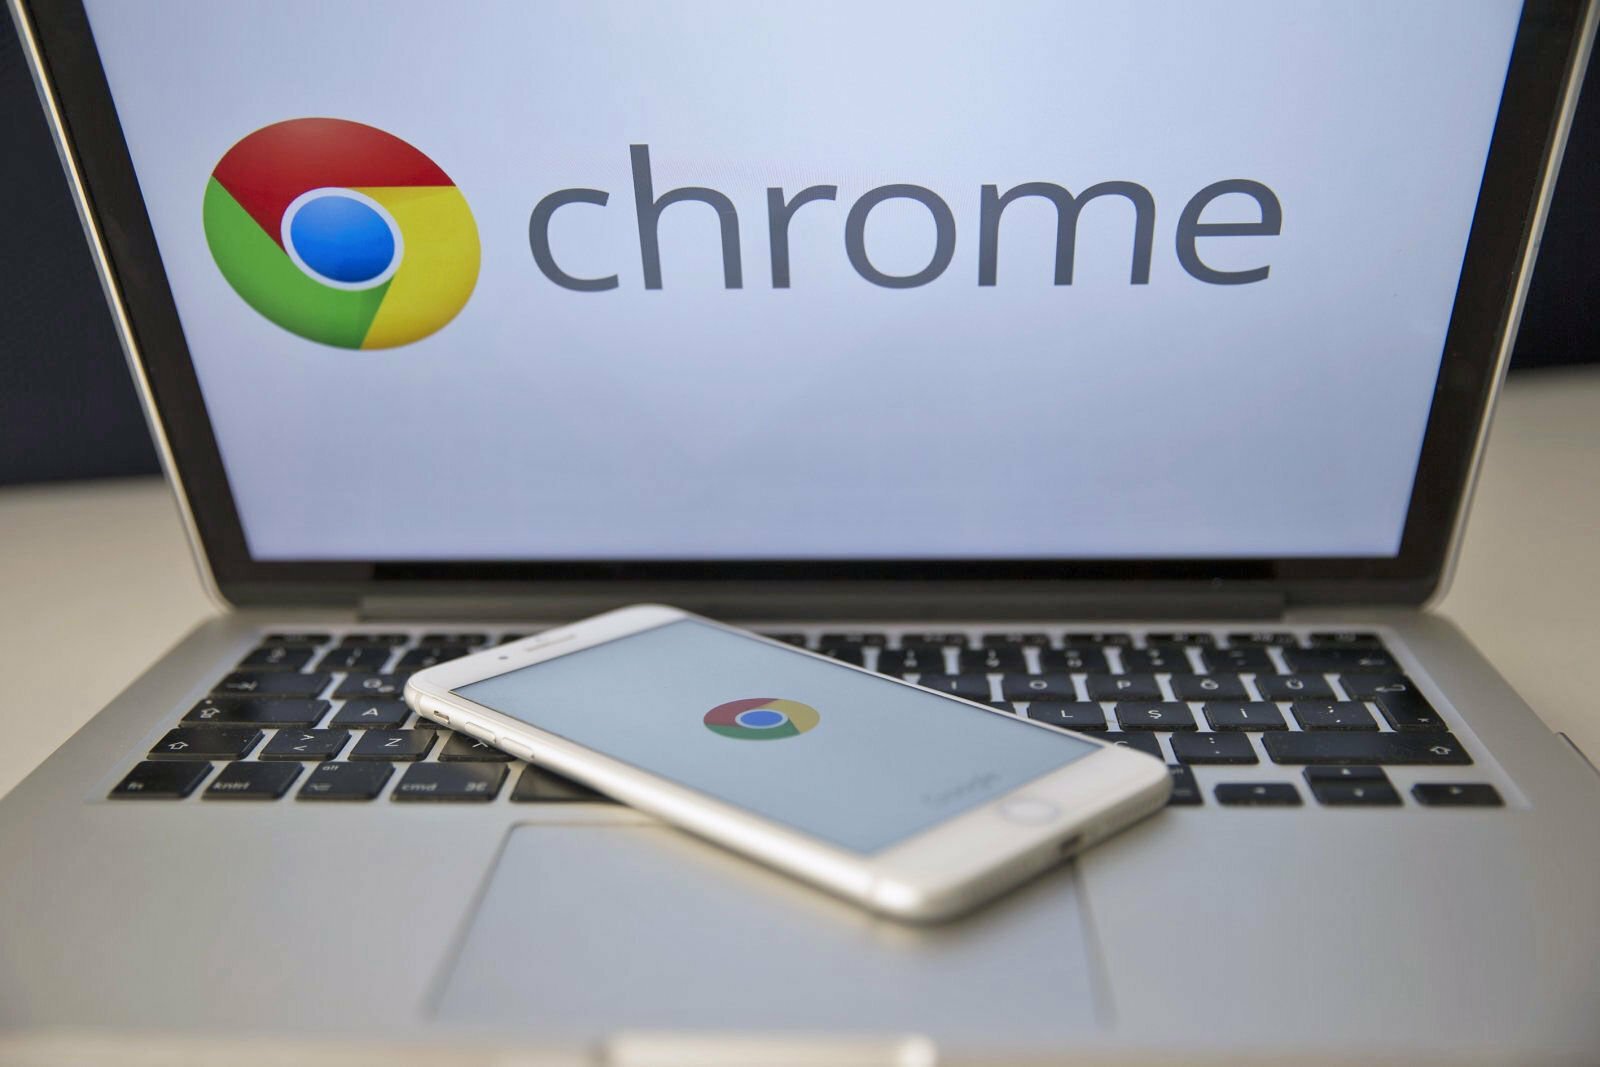 Τώρα με τον Chrome μπορείς να ελέγχεις αν τα διαπιστευτήρια σου είναι ασφαλή